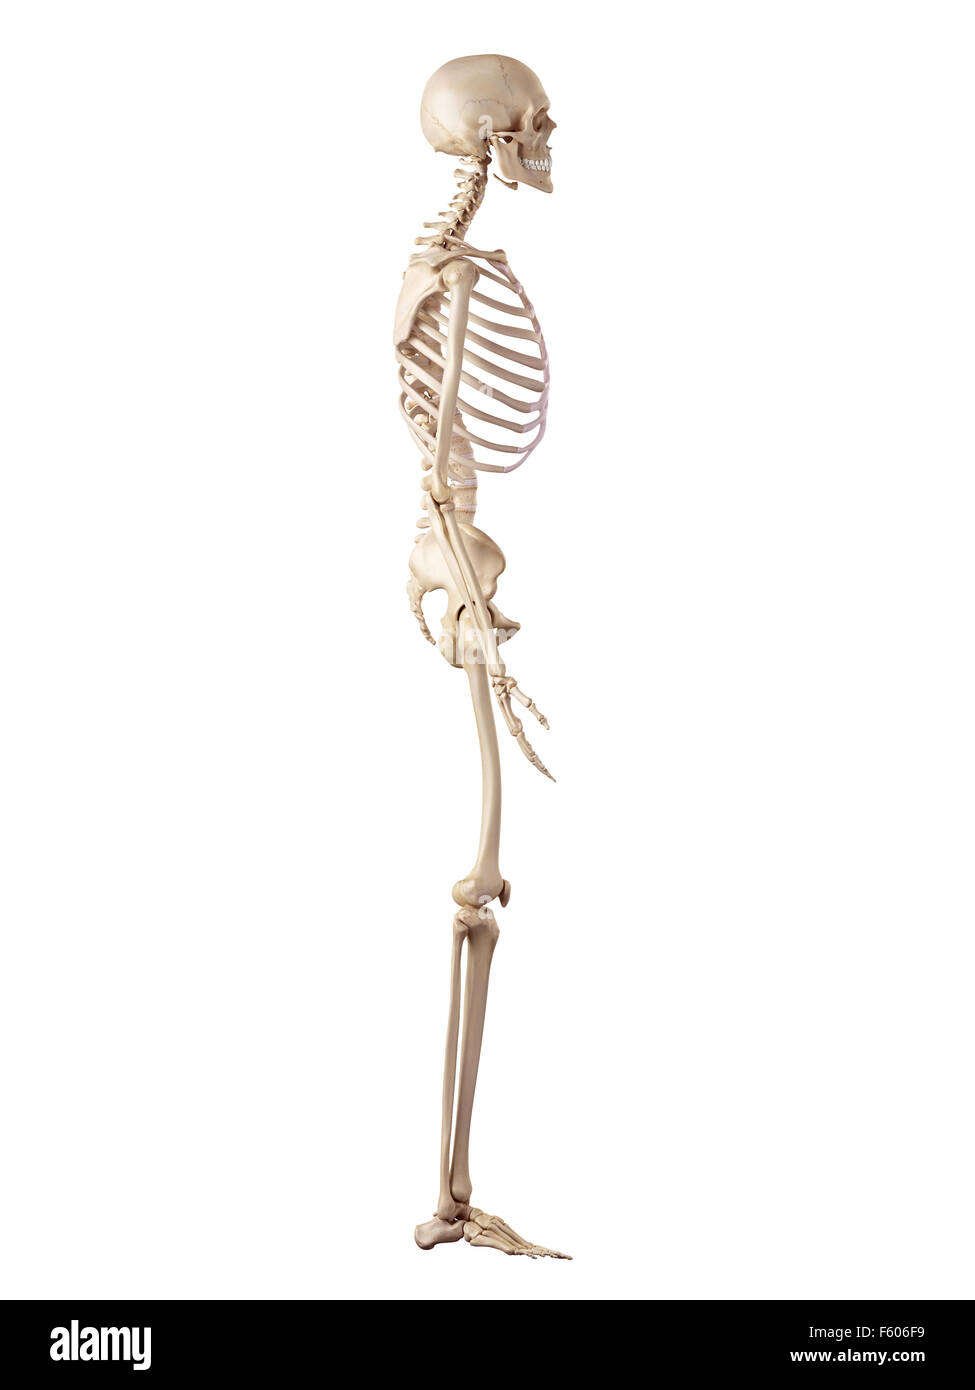 Medical precisa ilustración del esqueleto humano Foto de stock